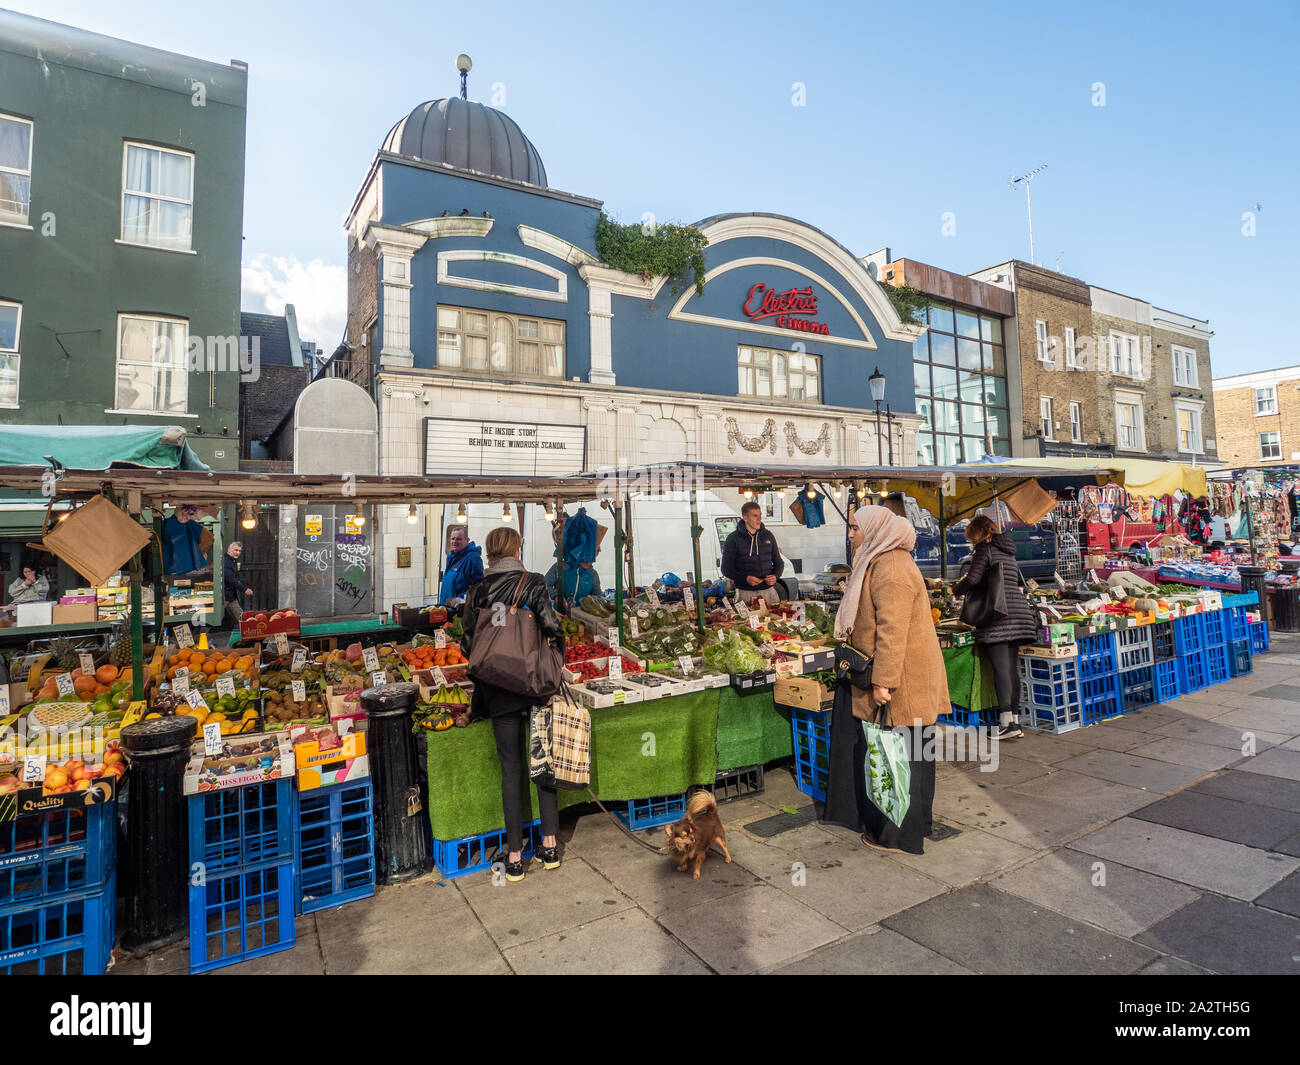 Fruit et Veg à vendre sur un marché sur la route de Portabello, Notting Hill, Londres.Behind est la façade bleue de Electric Cinema. Banque D'Images